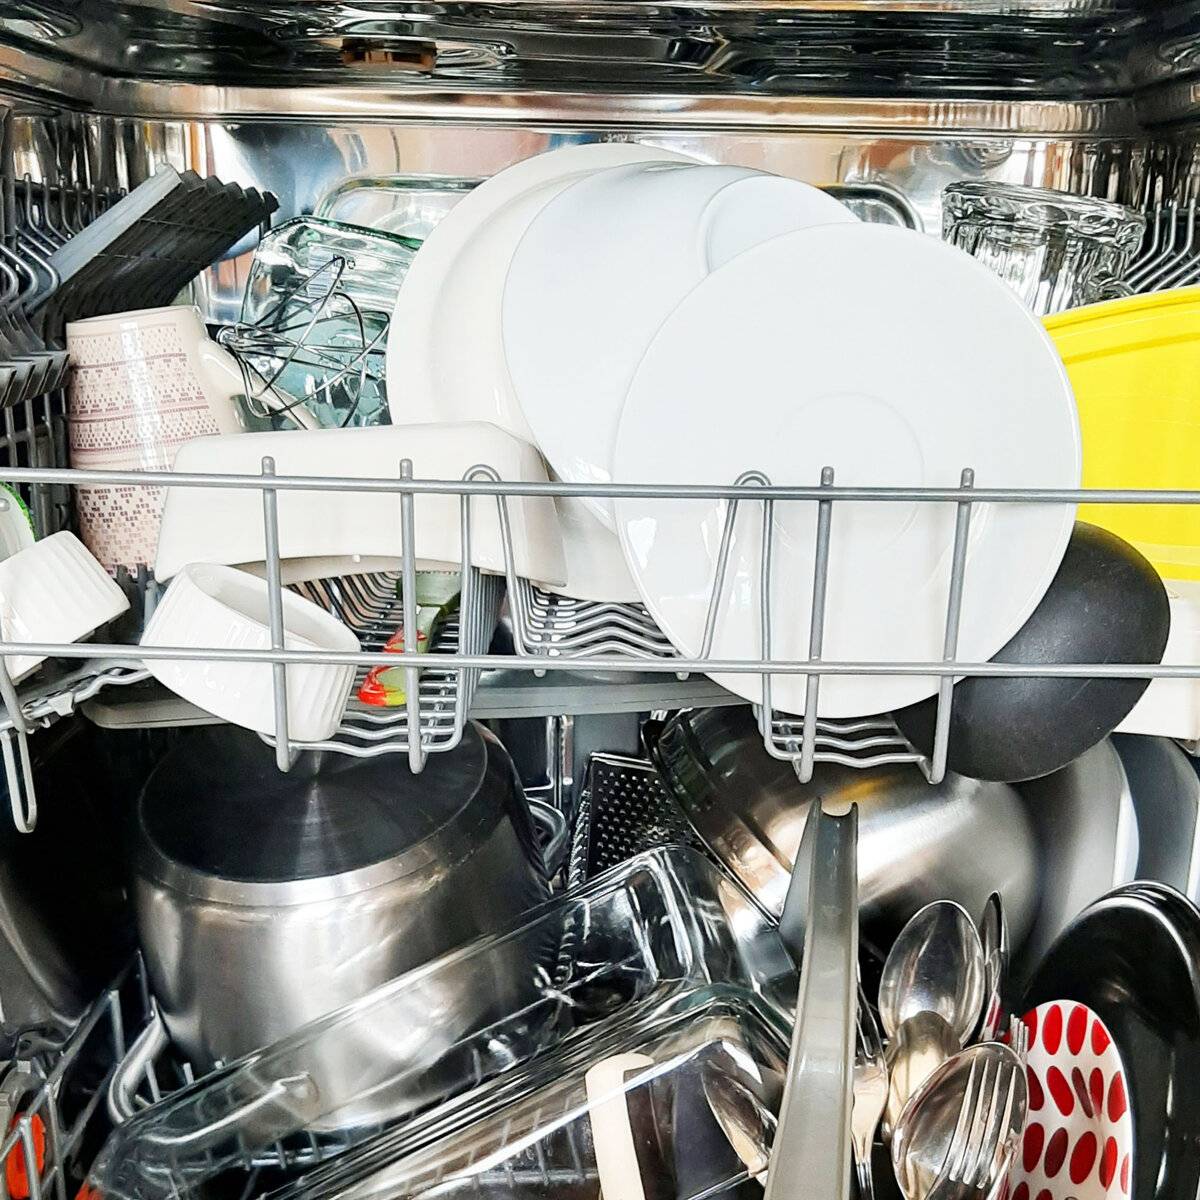 Кастрюля можно мыть в посудомоечной машине. Посуда в посудомойке. Загрузка посуды в посудомоечную машину. Правильная загрузка посуды в посудомоечную машину. Кастрюли в посудомойке.